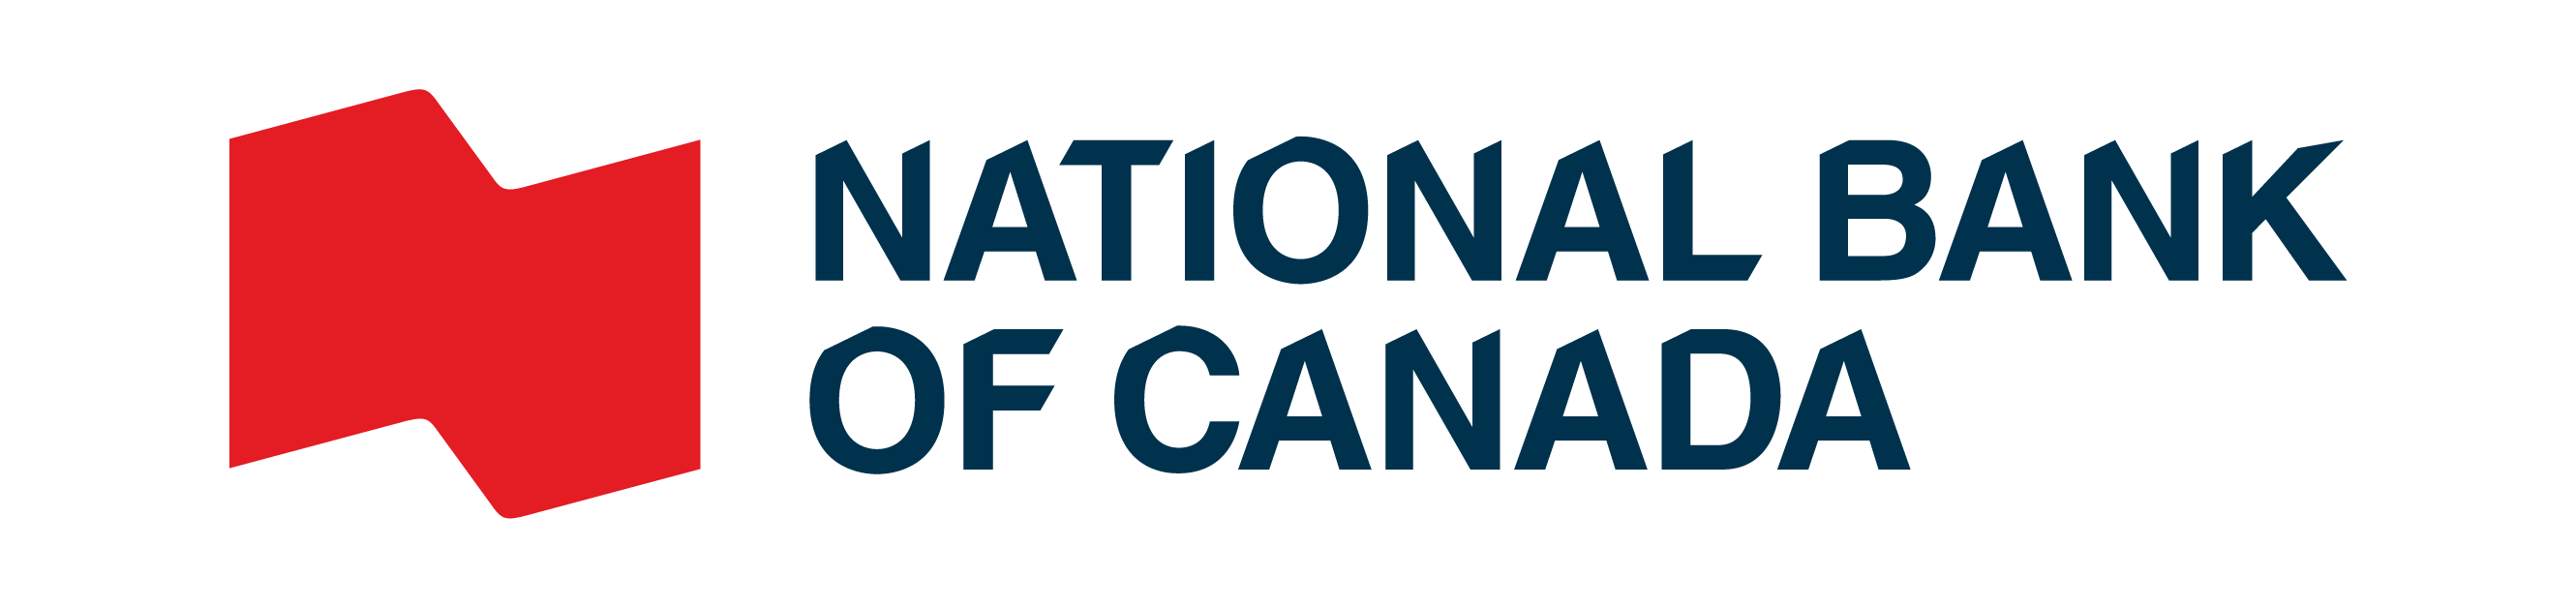 Logotipo do National Bank of Canada